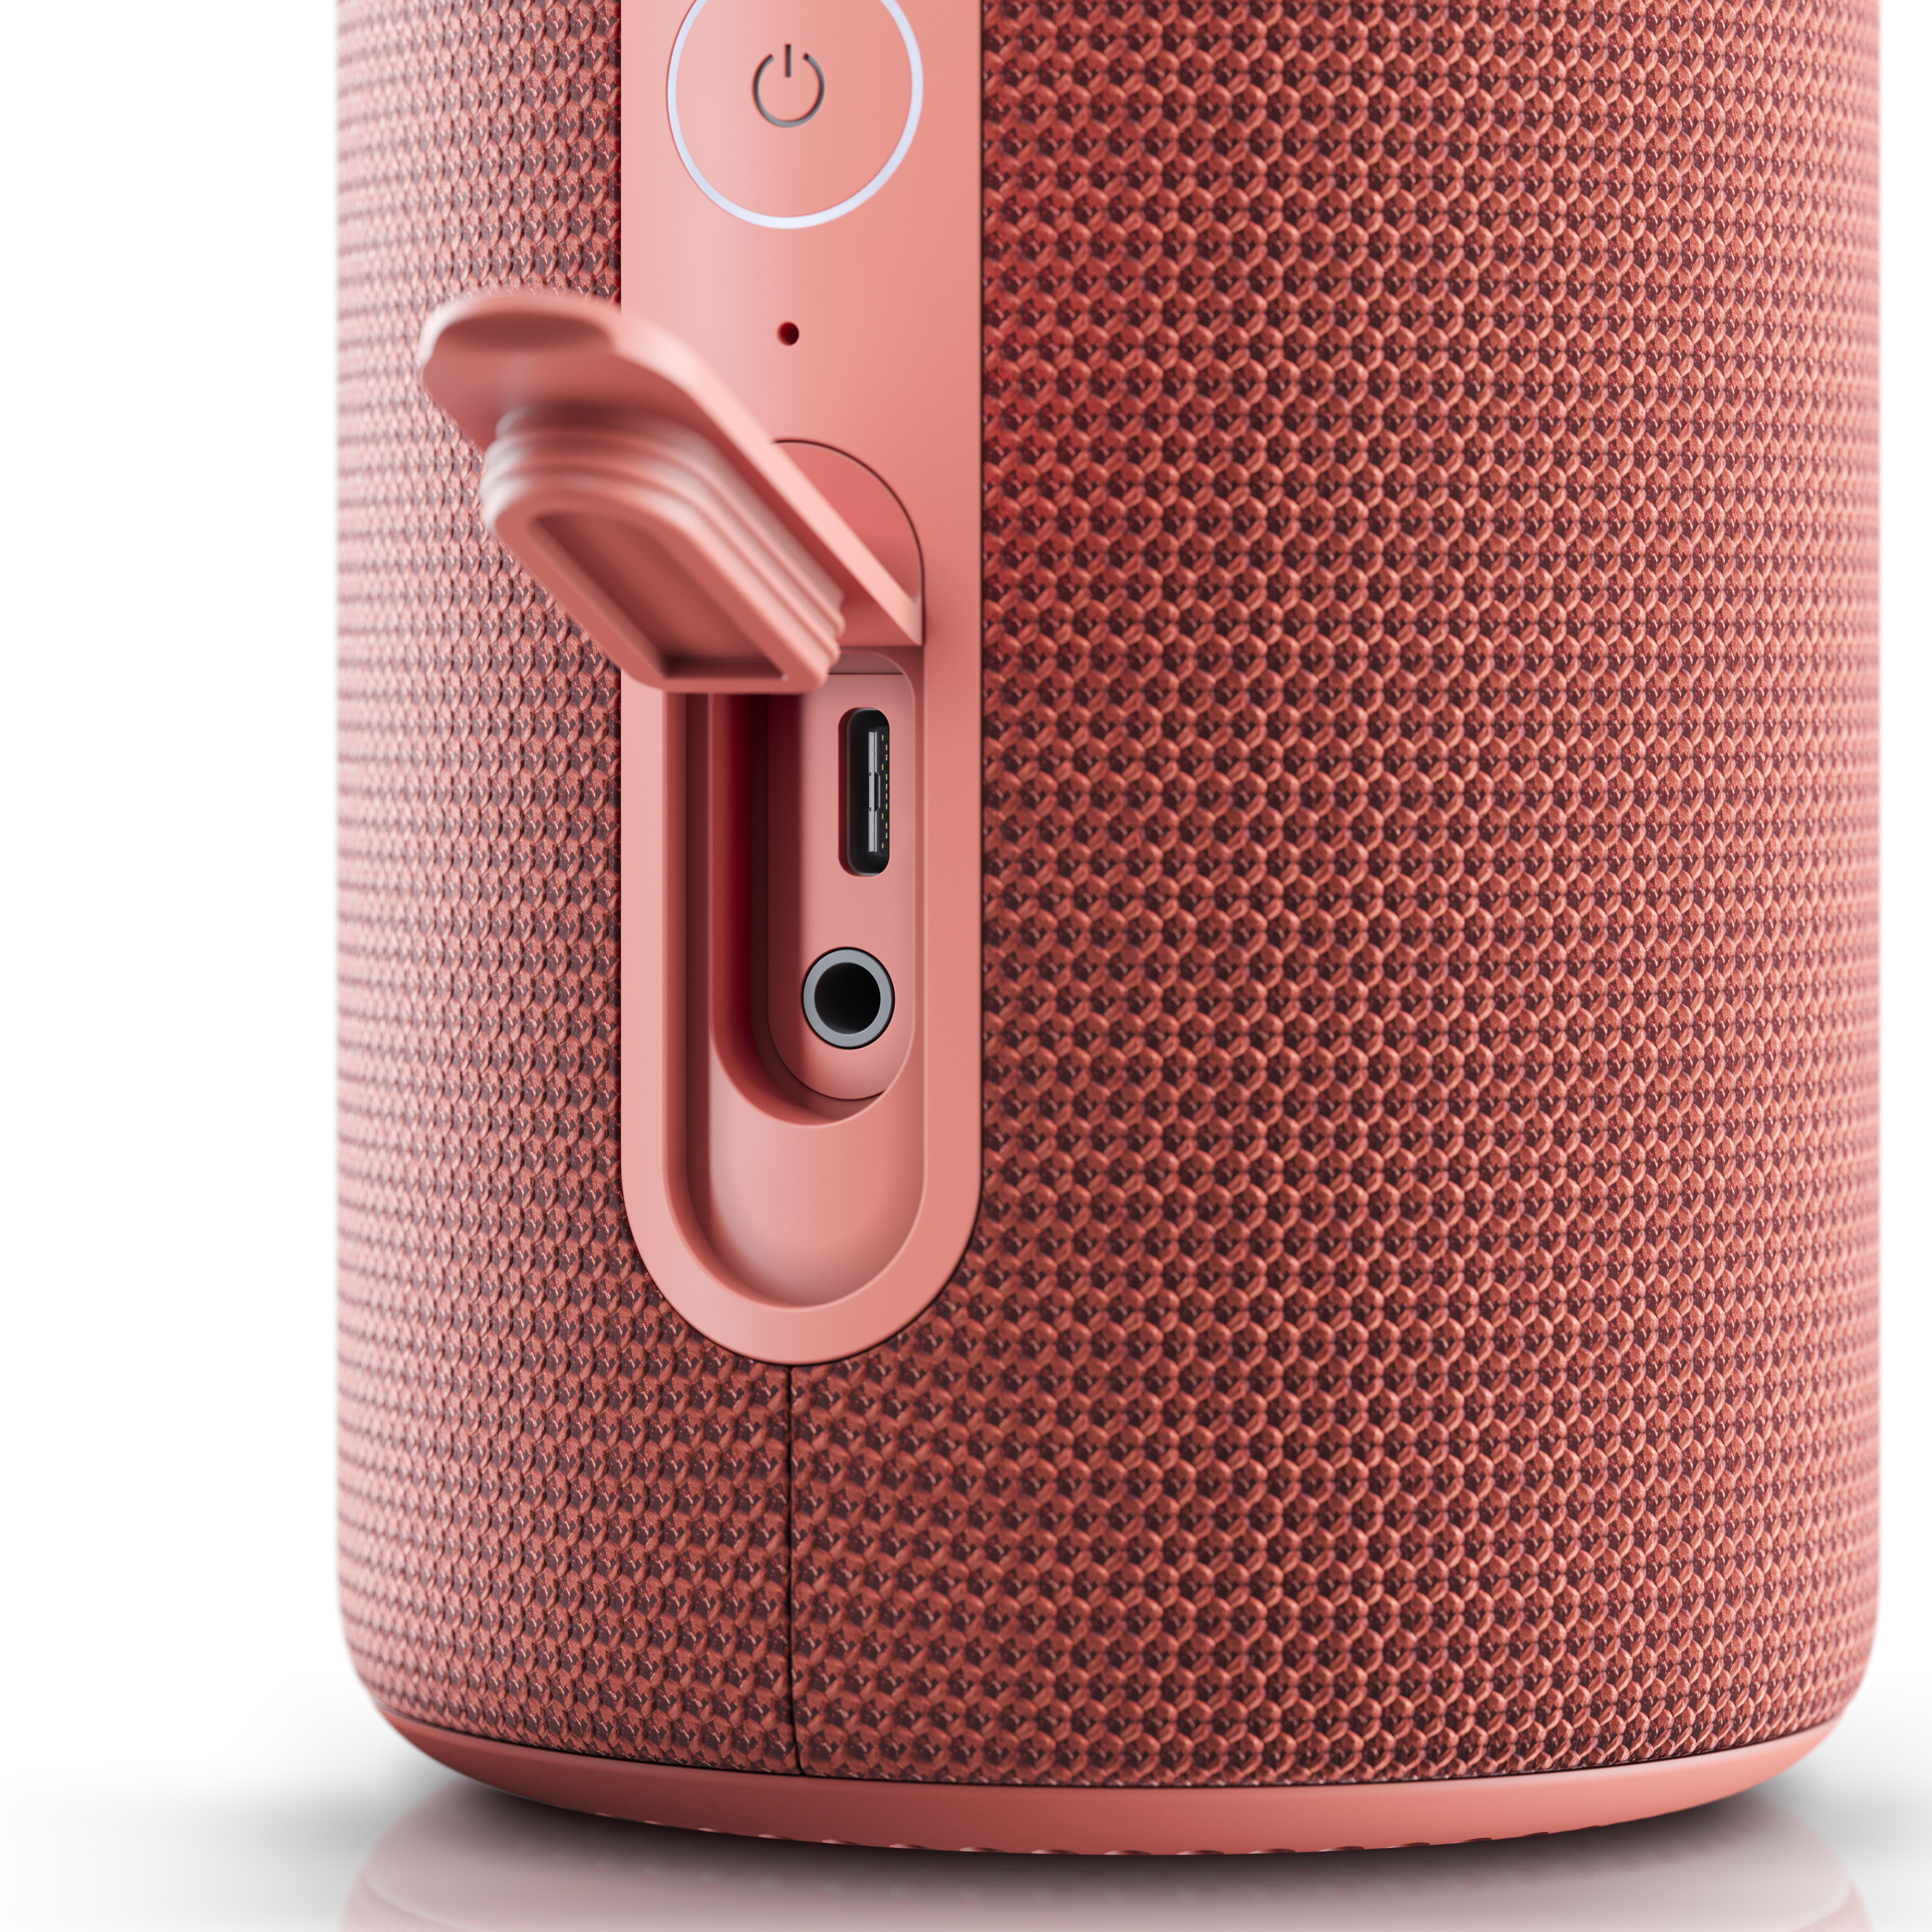 Портативная Bluetooth-колонка Loewe We. HEAR 2 Coral Red - купить в  Санкт-Петербурге в интернет-магазине